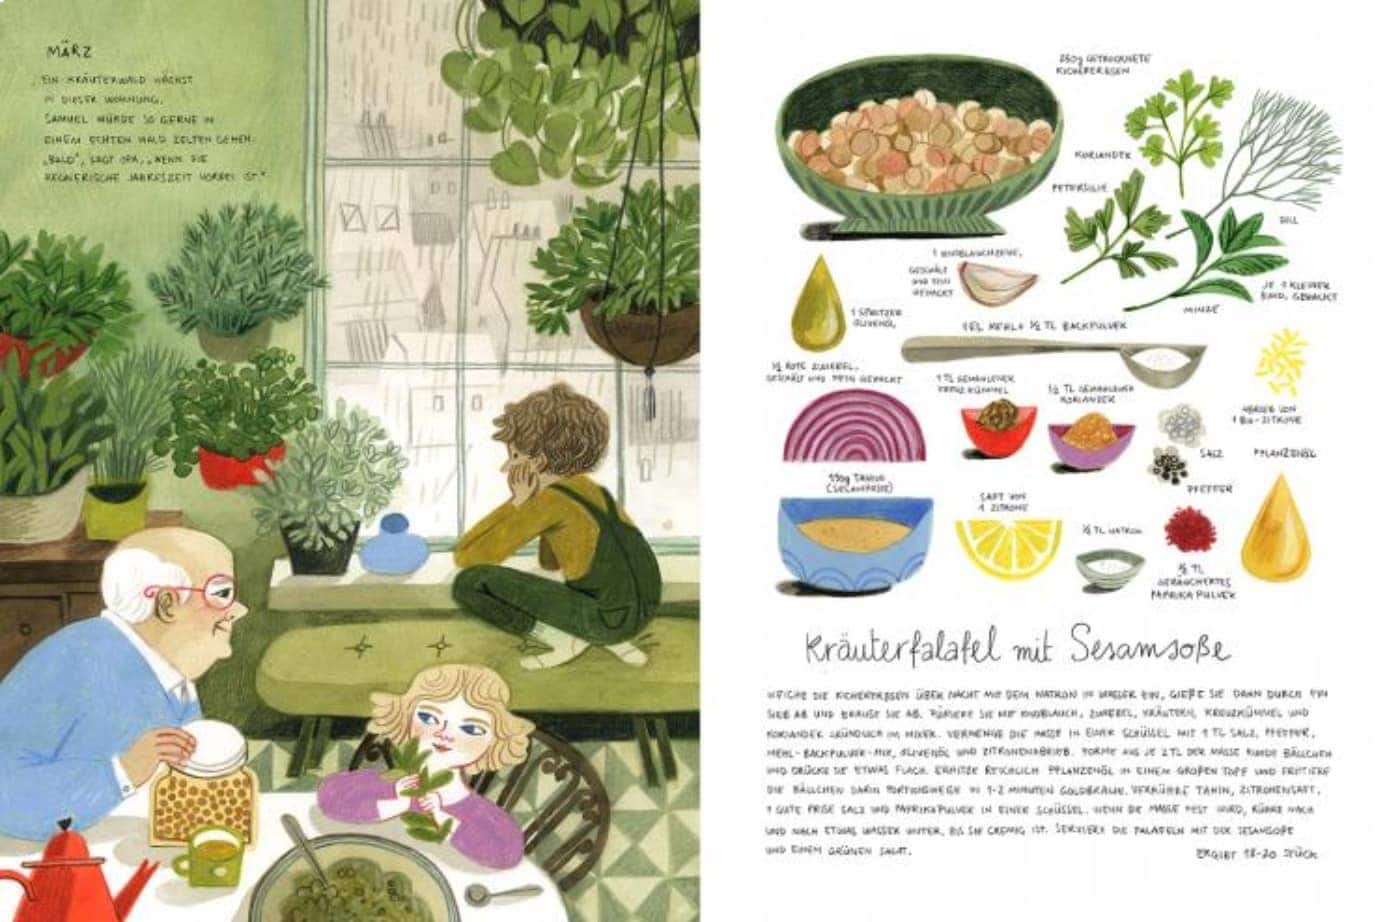 Kinderbuch-Tipp rund ums Gärtnern und Natur erleben mit Kindern: Huet pflanz ich, morgen koch ich ... mit Rezepten: Kräuter-Falafel // HIMBEER